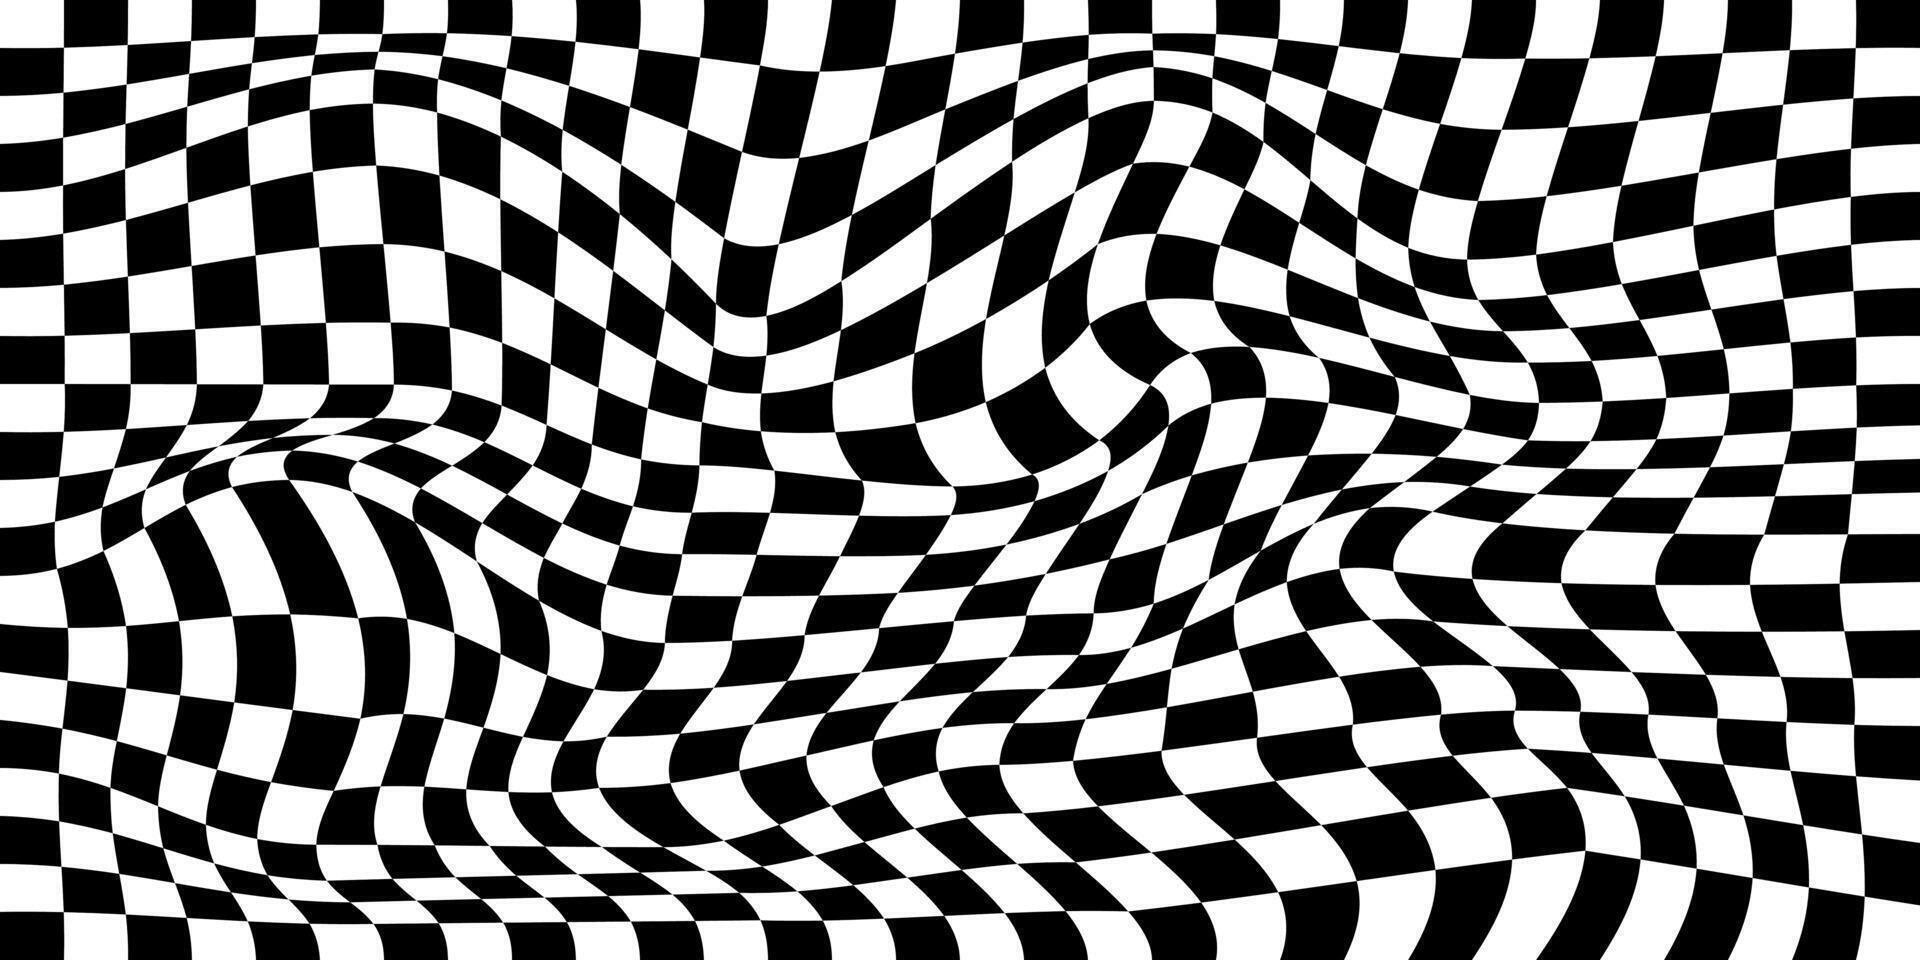 verzerrt Schach Tafel Hintergrund. kariert optisch Illusion. psychedelisch Muster mit verzogen schwarz und Weiß Quadrate. Rennen Flagge Textur. trippy Schachbrett Oberfläche. vektor